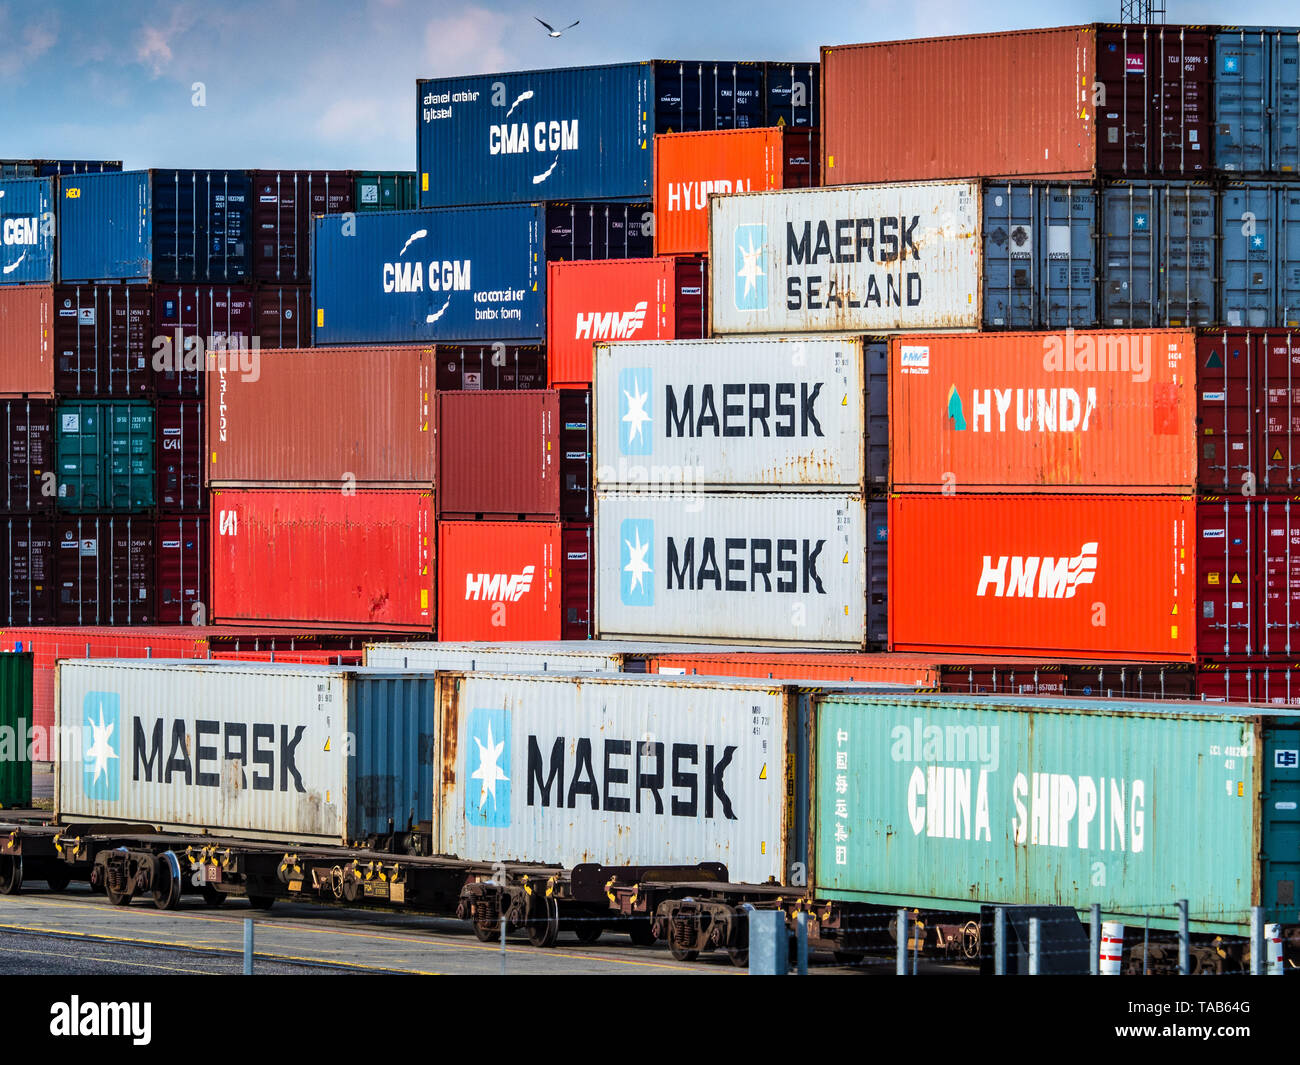 Rail Freight Terminal UK - Intermodal Shipping Container werden in Güterzüge für den Weitertransport am Felixstowe Port Railhead verladen. Stockfoto